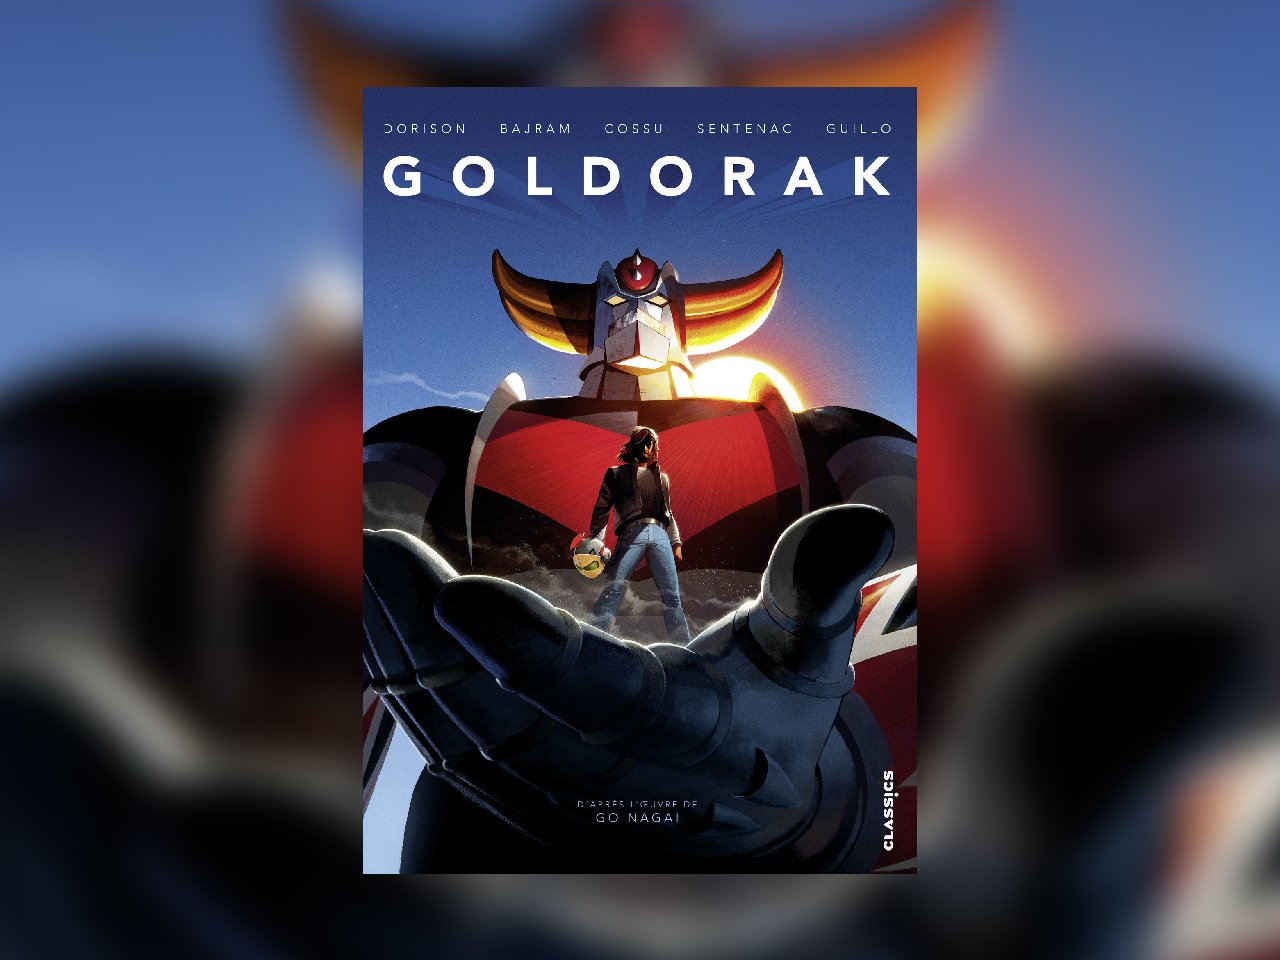  Les aventures de Goldorak - Livres